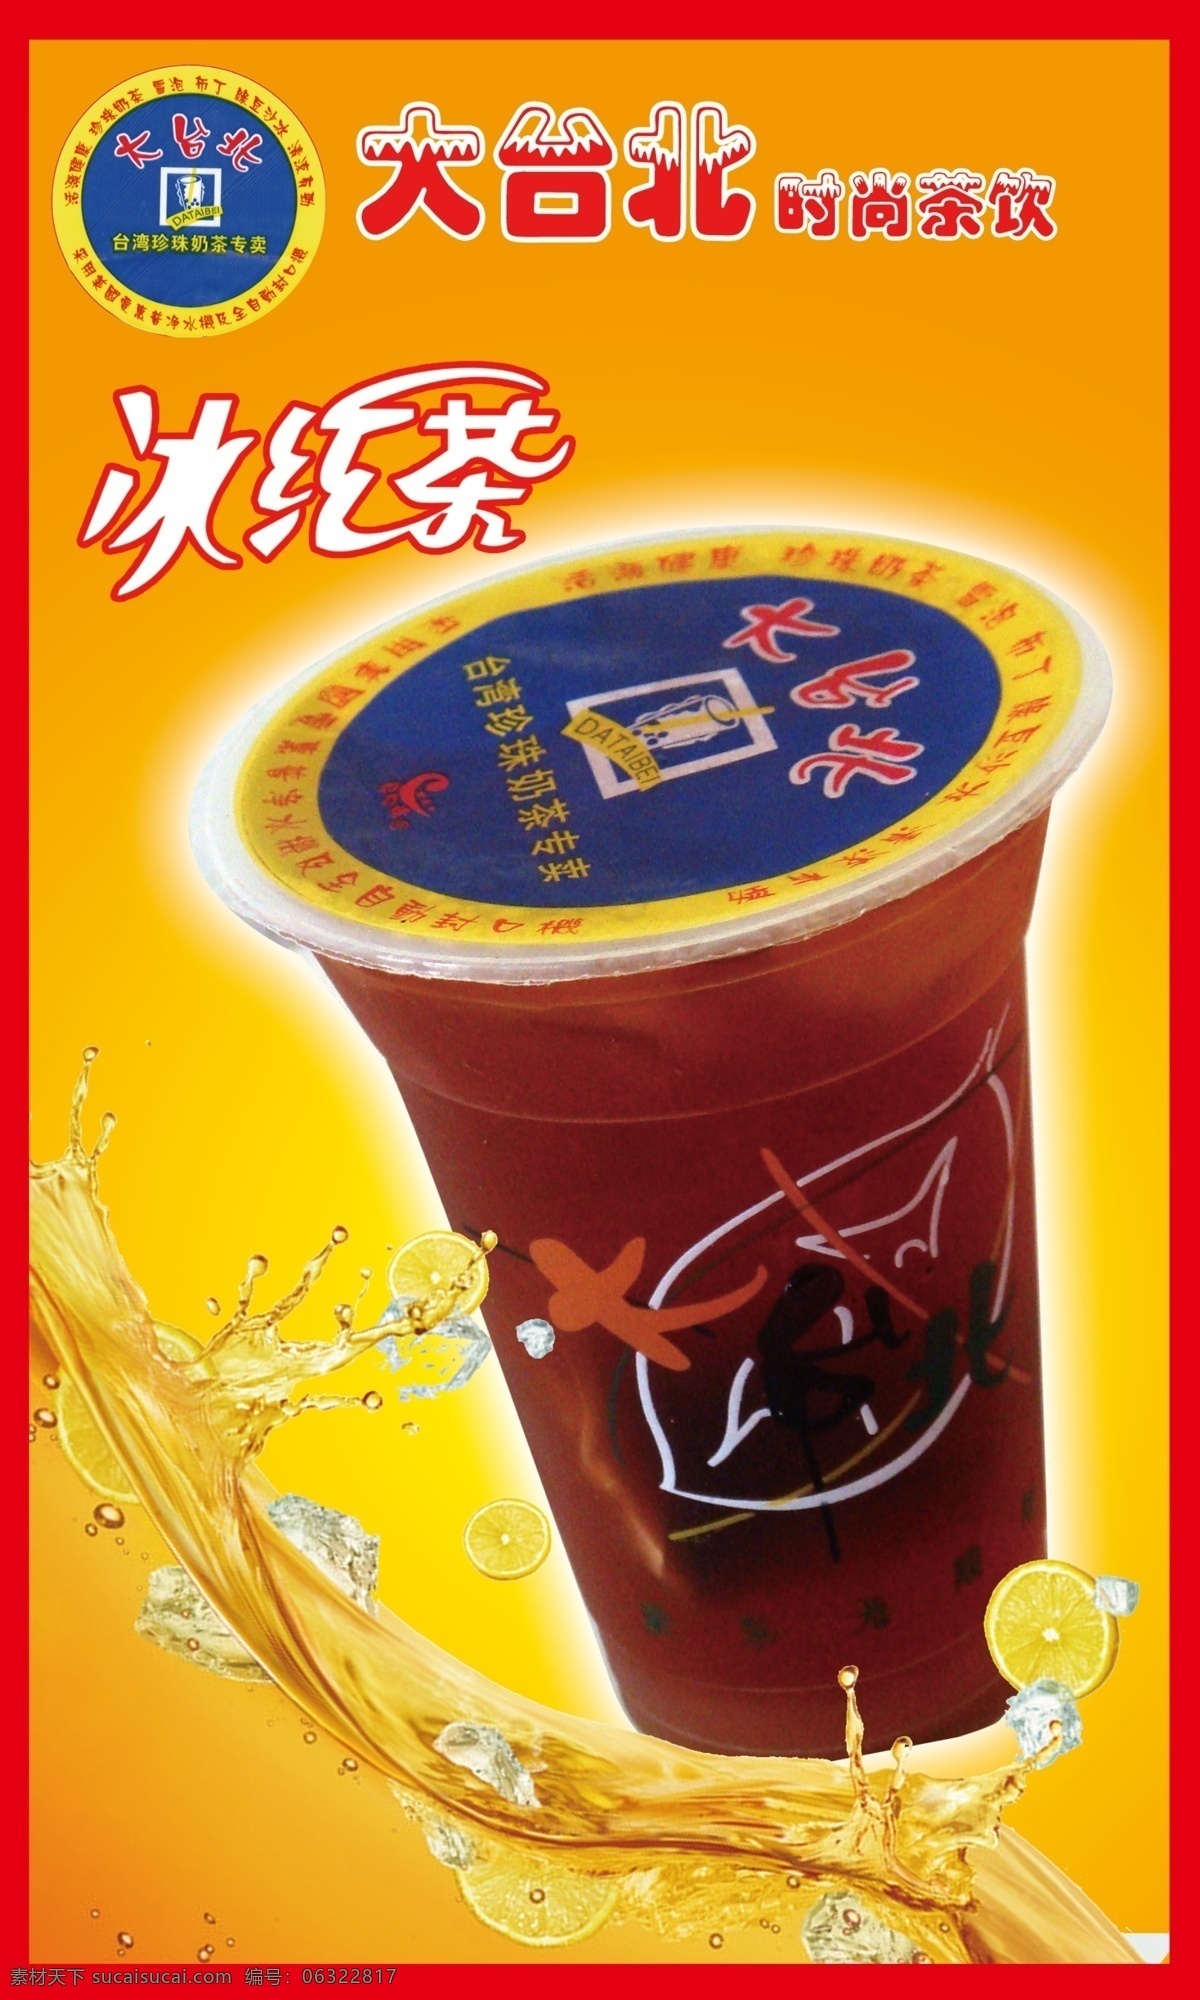 冰红茶 橙黄 广告设计模板 源文件 珍珠奶茶 大台北 模板下载 大 台北 珍珠 奶茶 矢量图 日常生活